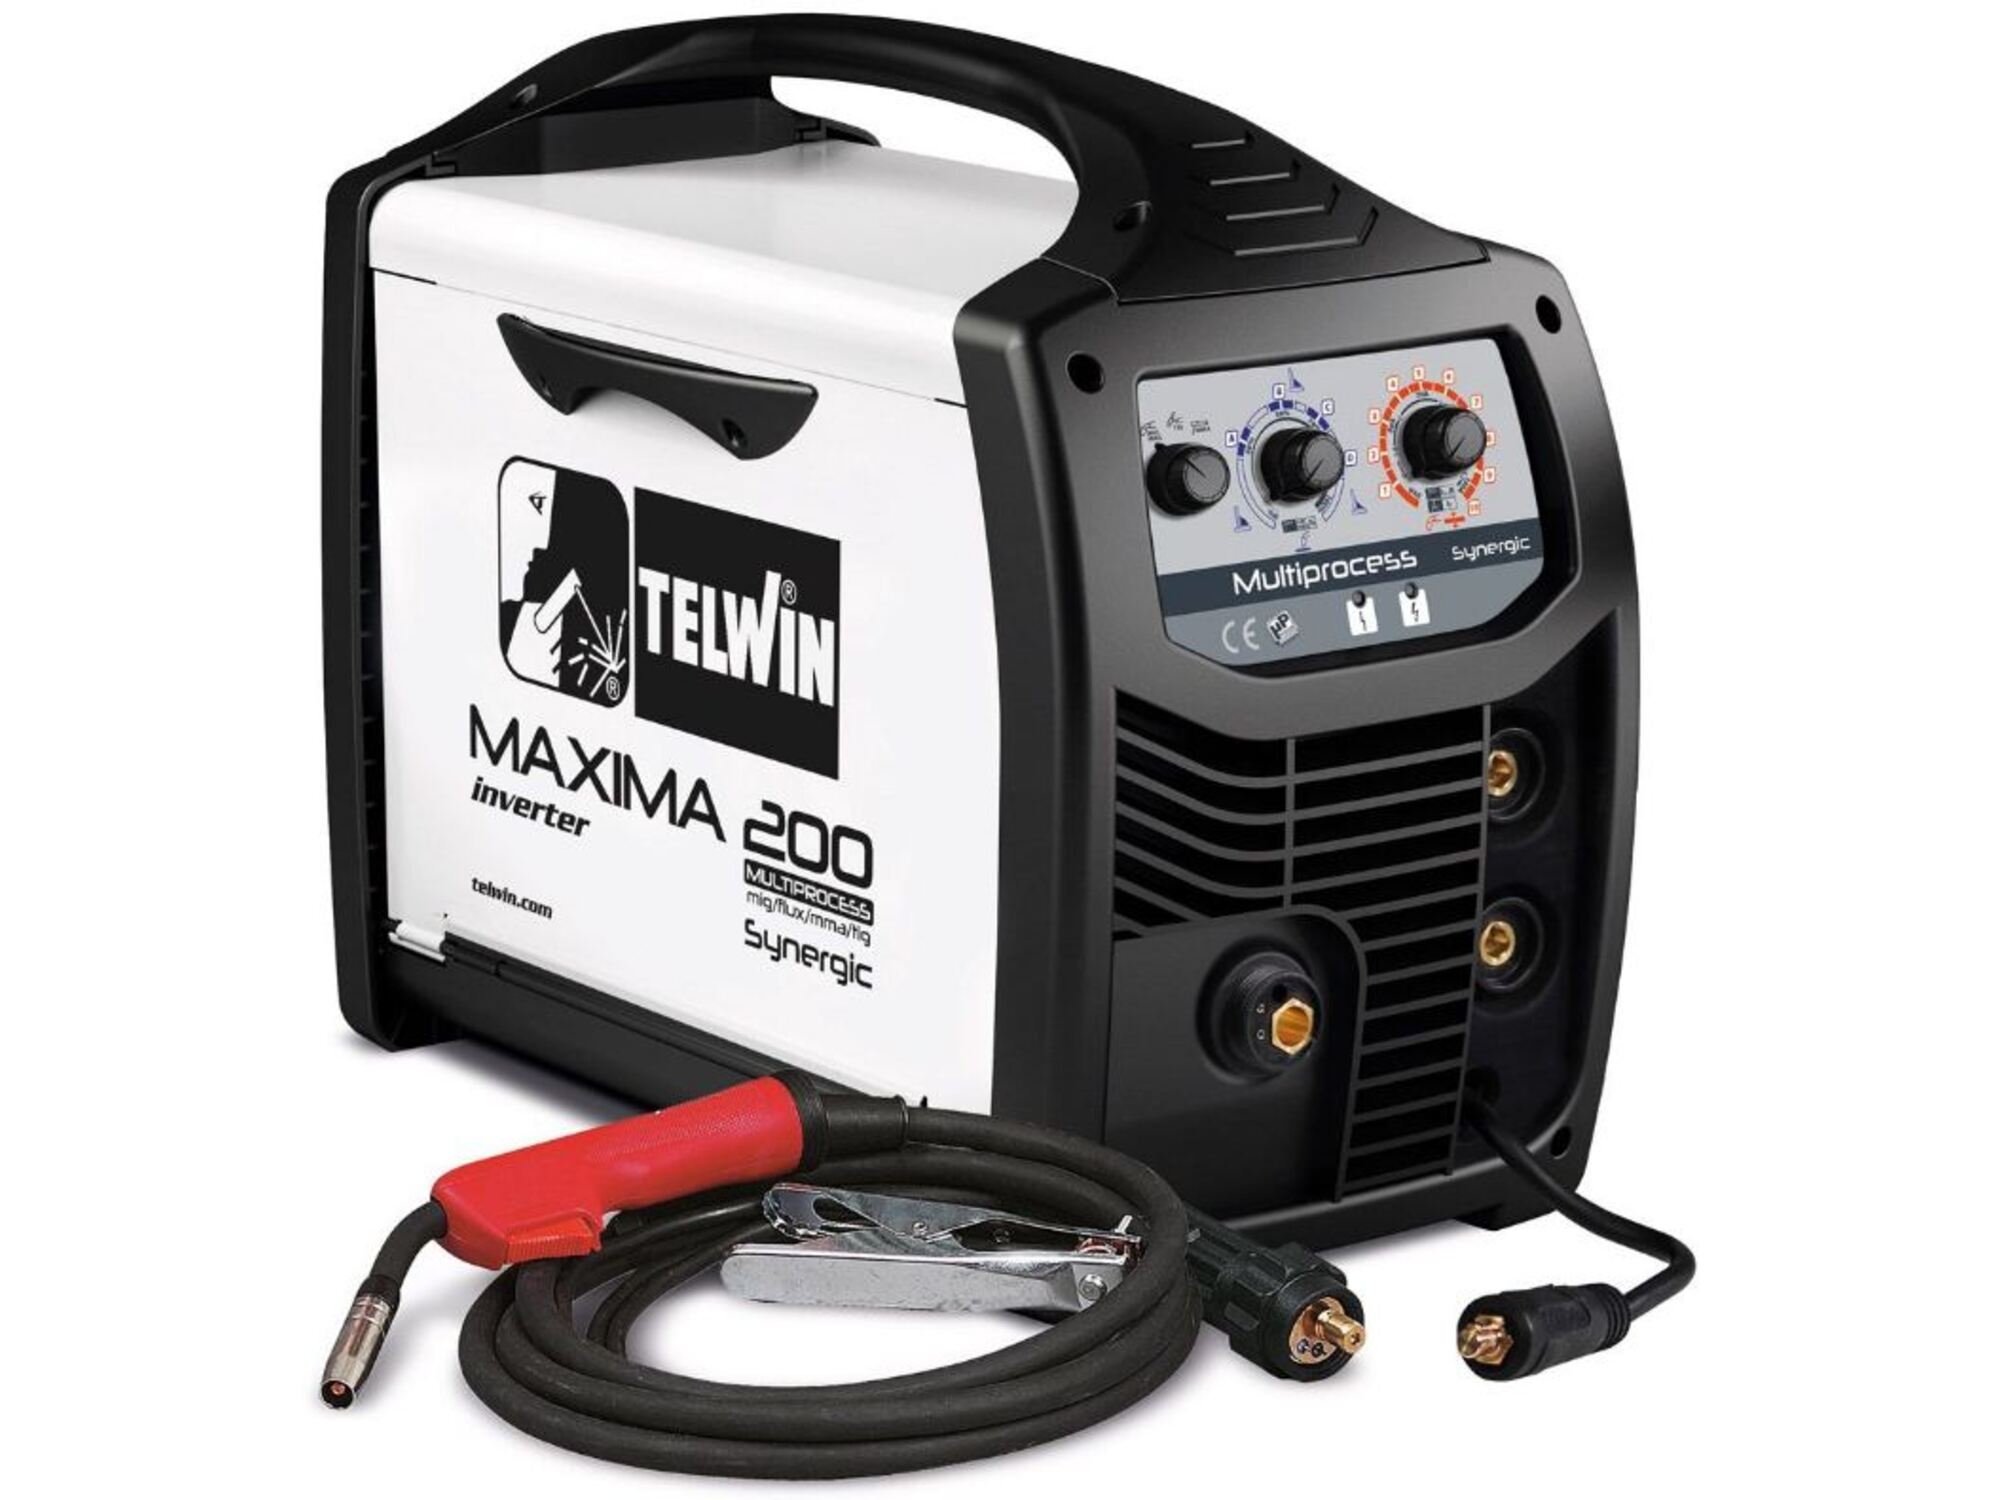 TELWIN invertorski varilnik MAXIMA 200 816087